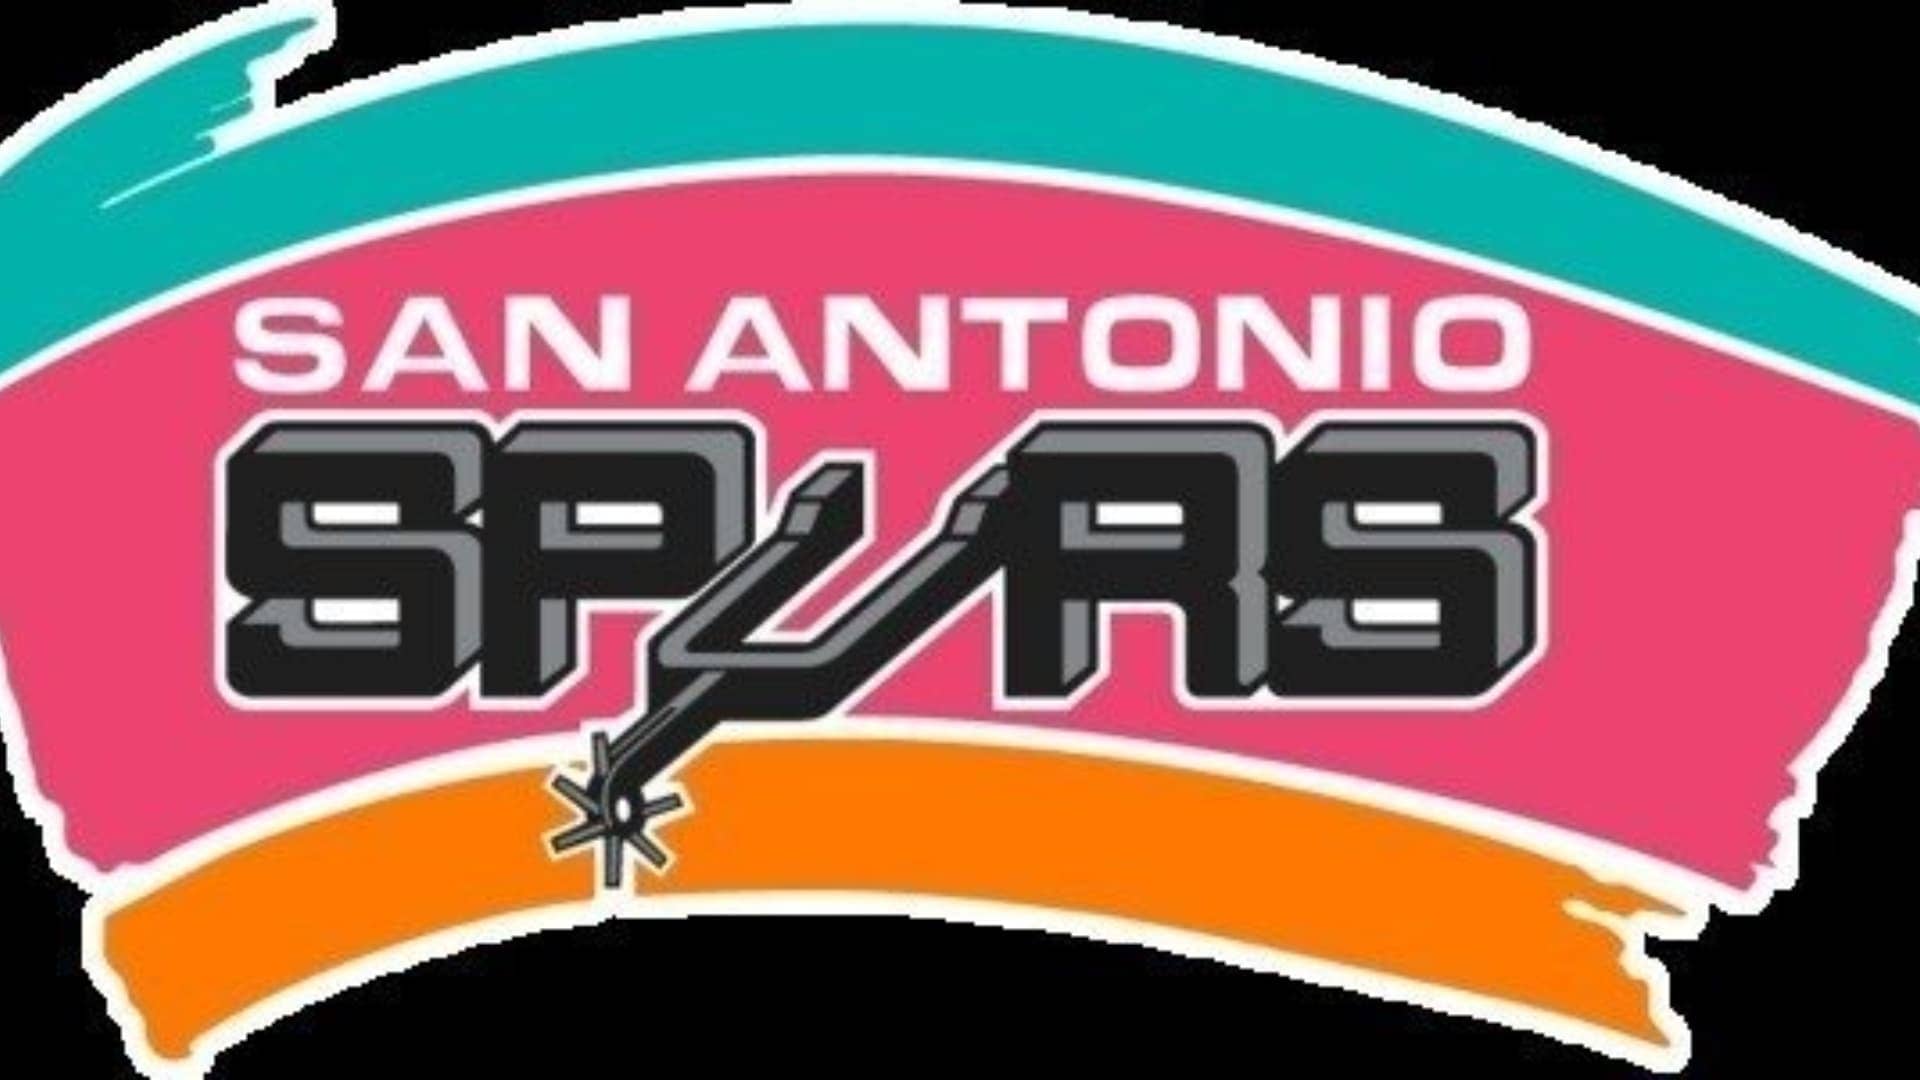 San Antonio Spurs - NBA teams in alphabetical order